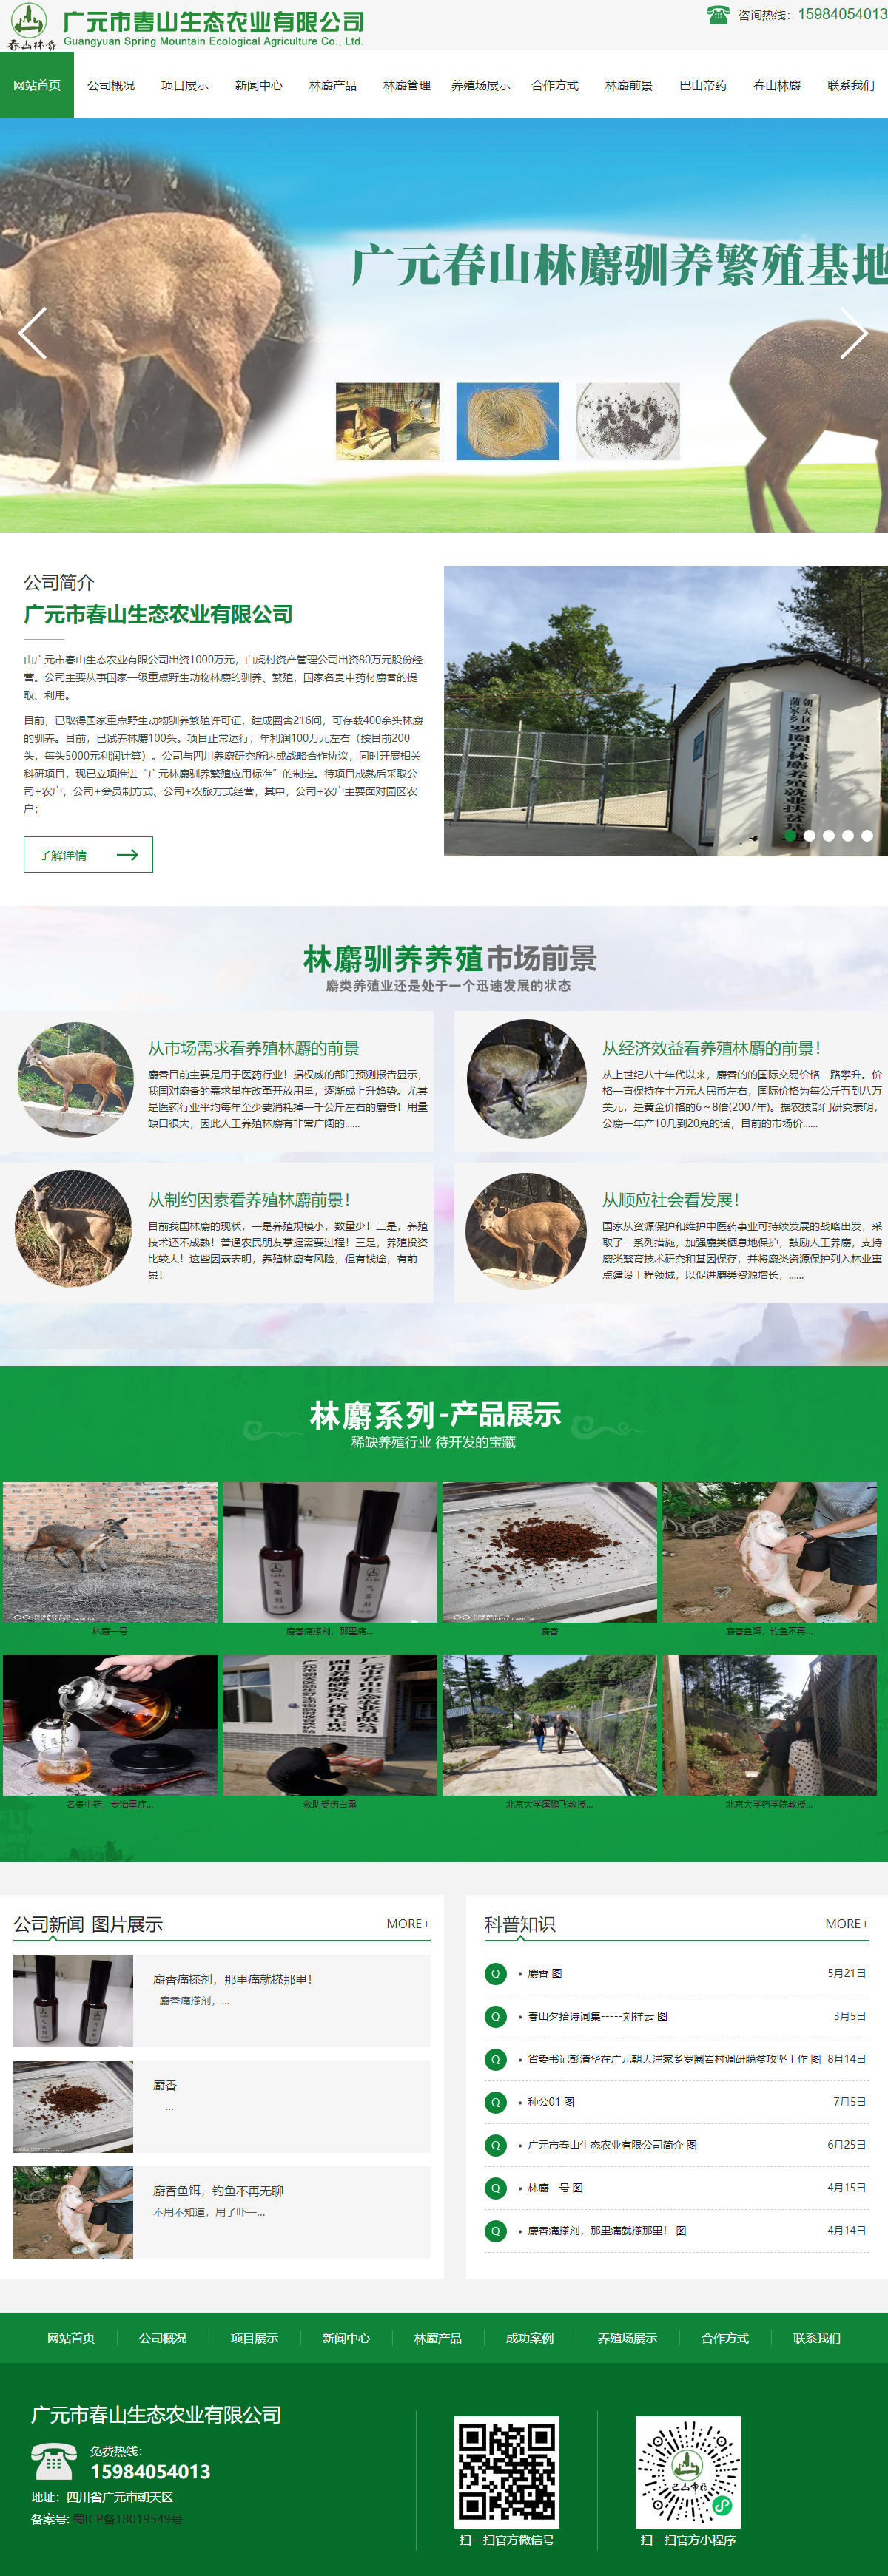 广元市春山生态农业有限公司网站案例